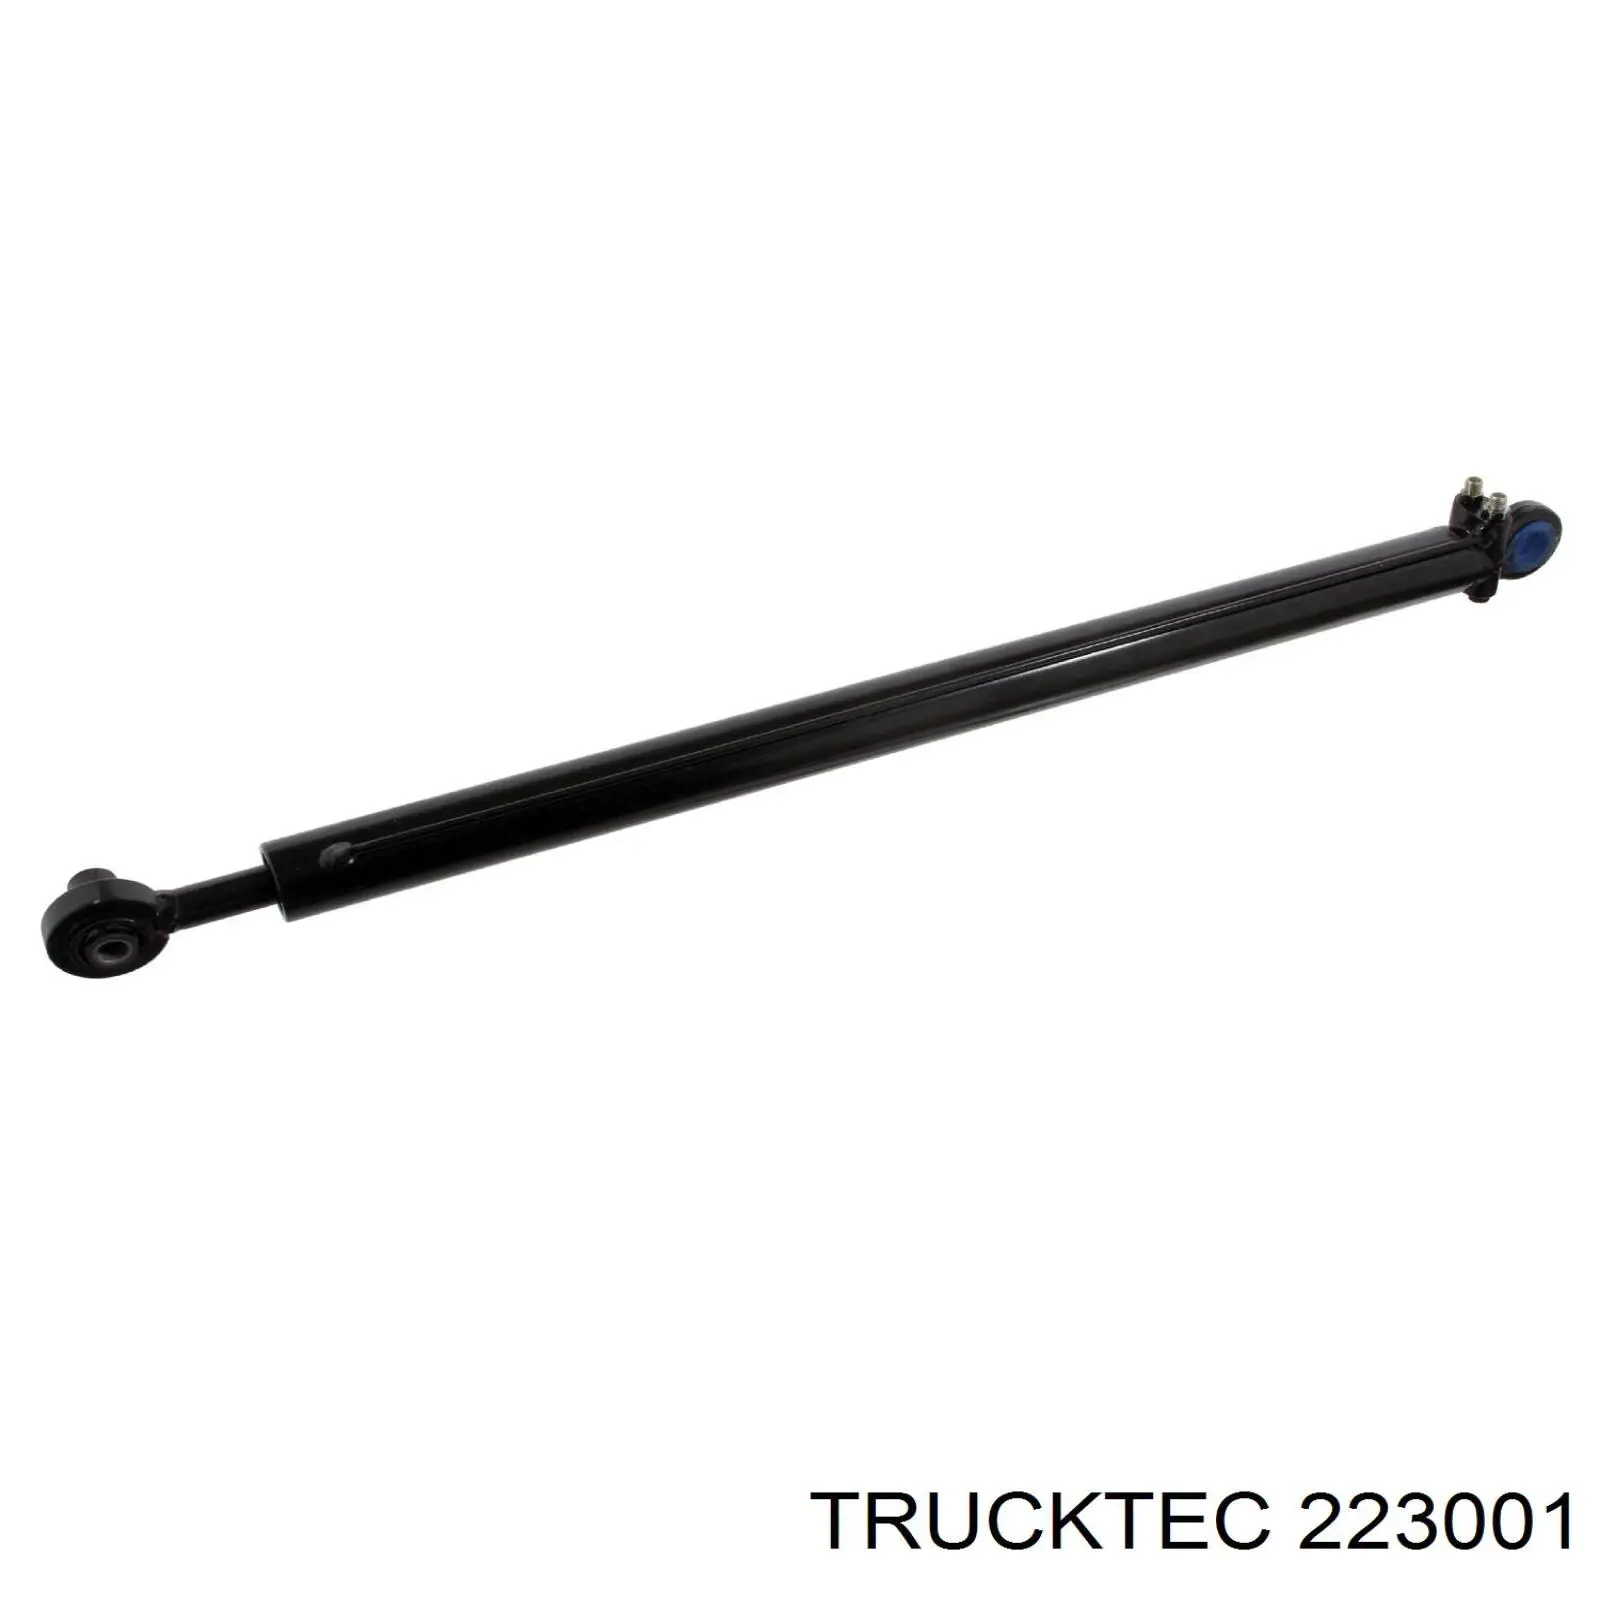 223001 Trucktec опорный подшипник первичного вала кпп (центрирующий подшипник маховика)